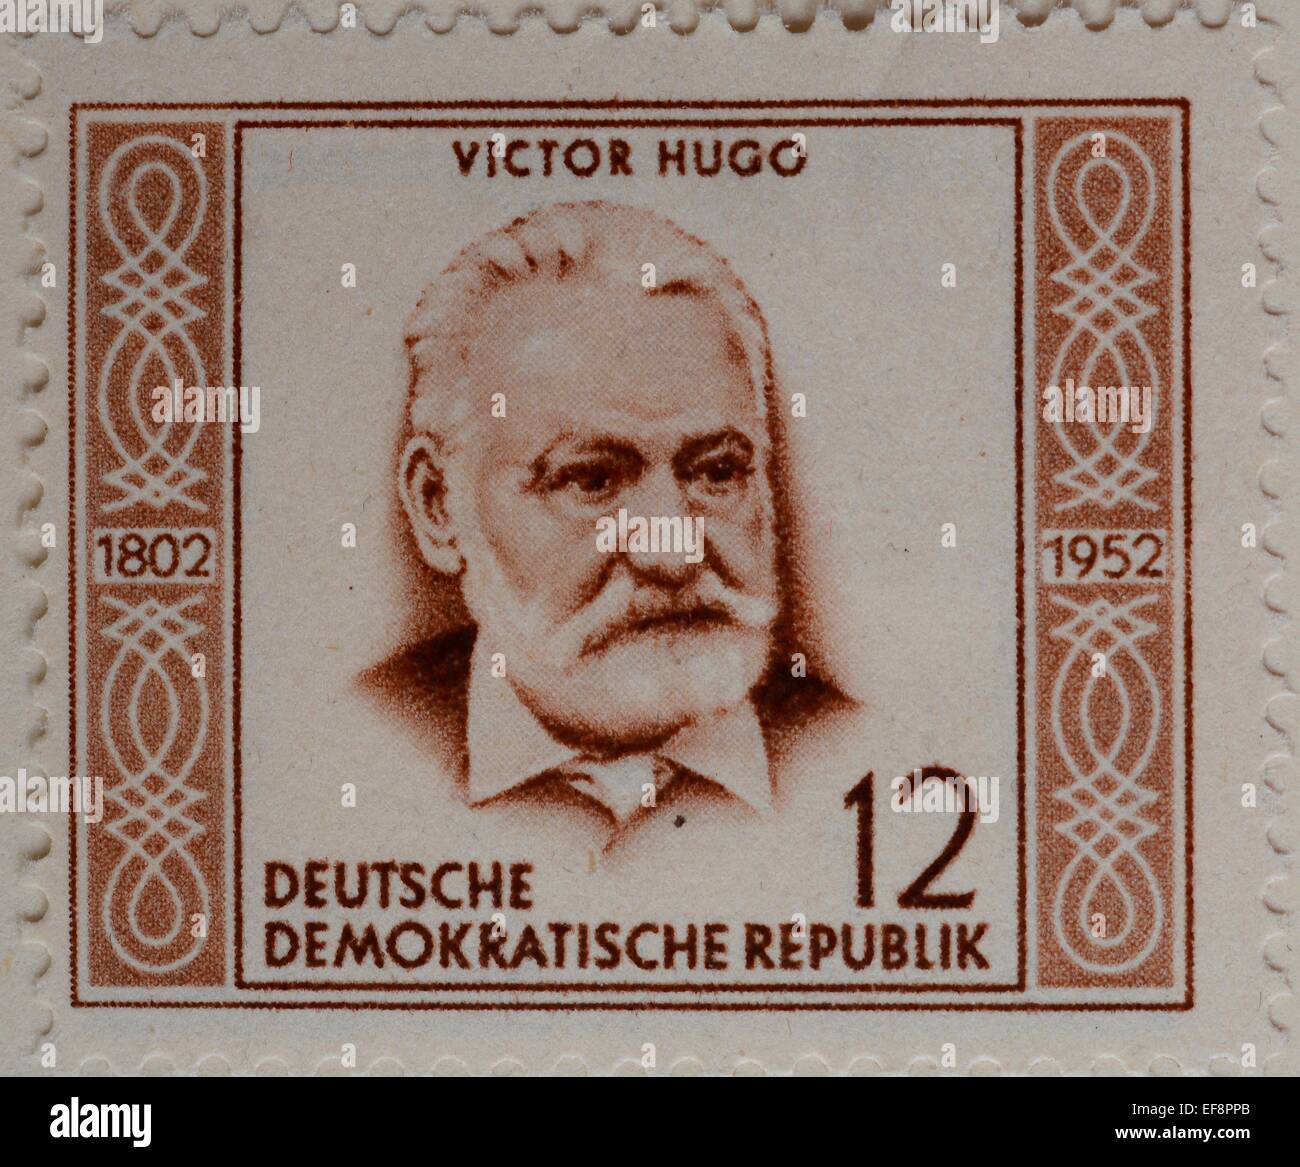 Victor Hugo, französischer Dichter, Schriftsteller und Dramatiker der romantischen Bewegung, Porträt auf einer deutschen Briefmarke, DDR, 1952 Stockfoto